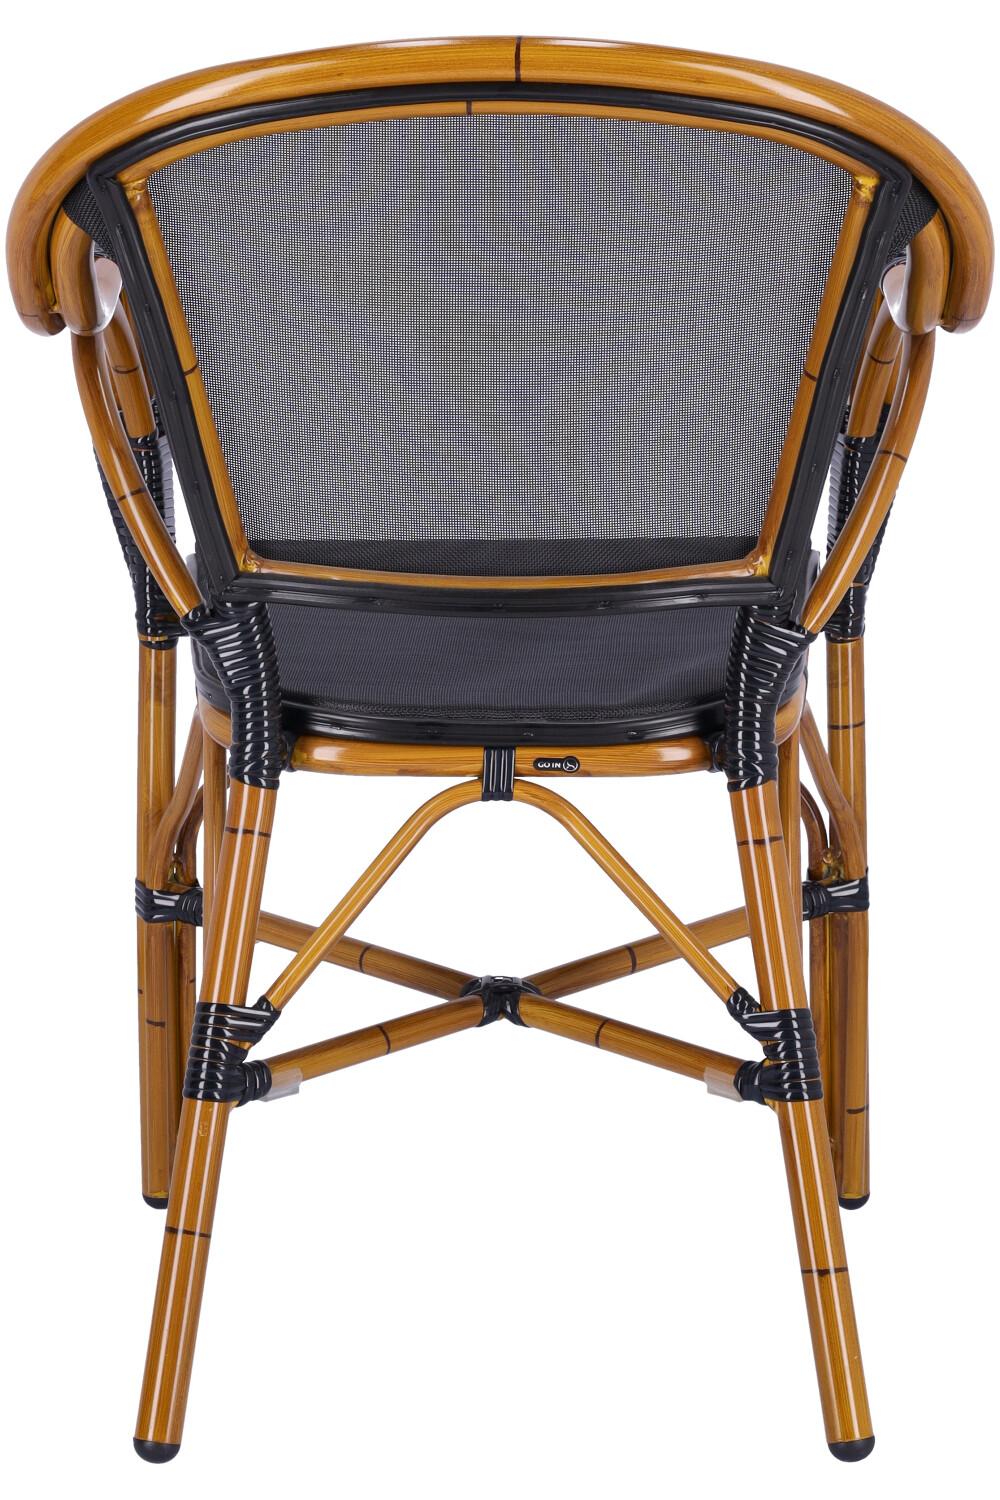 Abbildung arm chair Malou Rückansicht